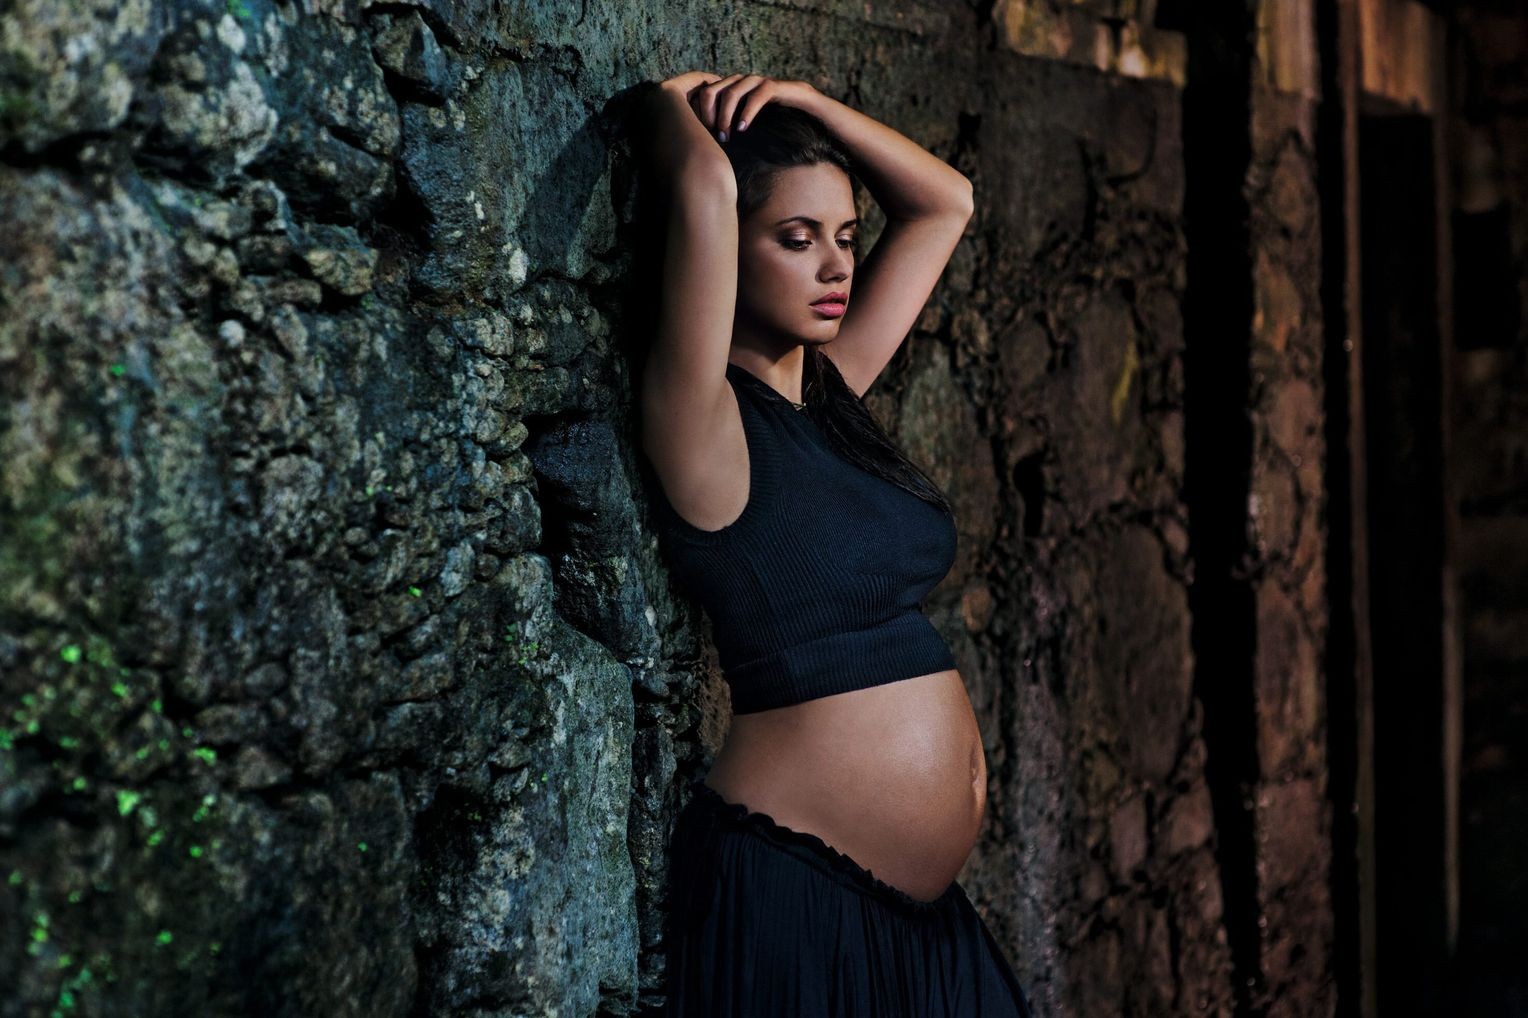 Адриана Лима, первая беременная модель в Календаре Пирелли, 2013. Фотограф Стив Маккарри